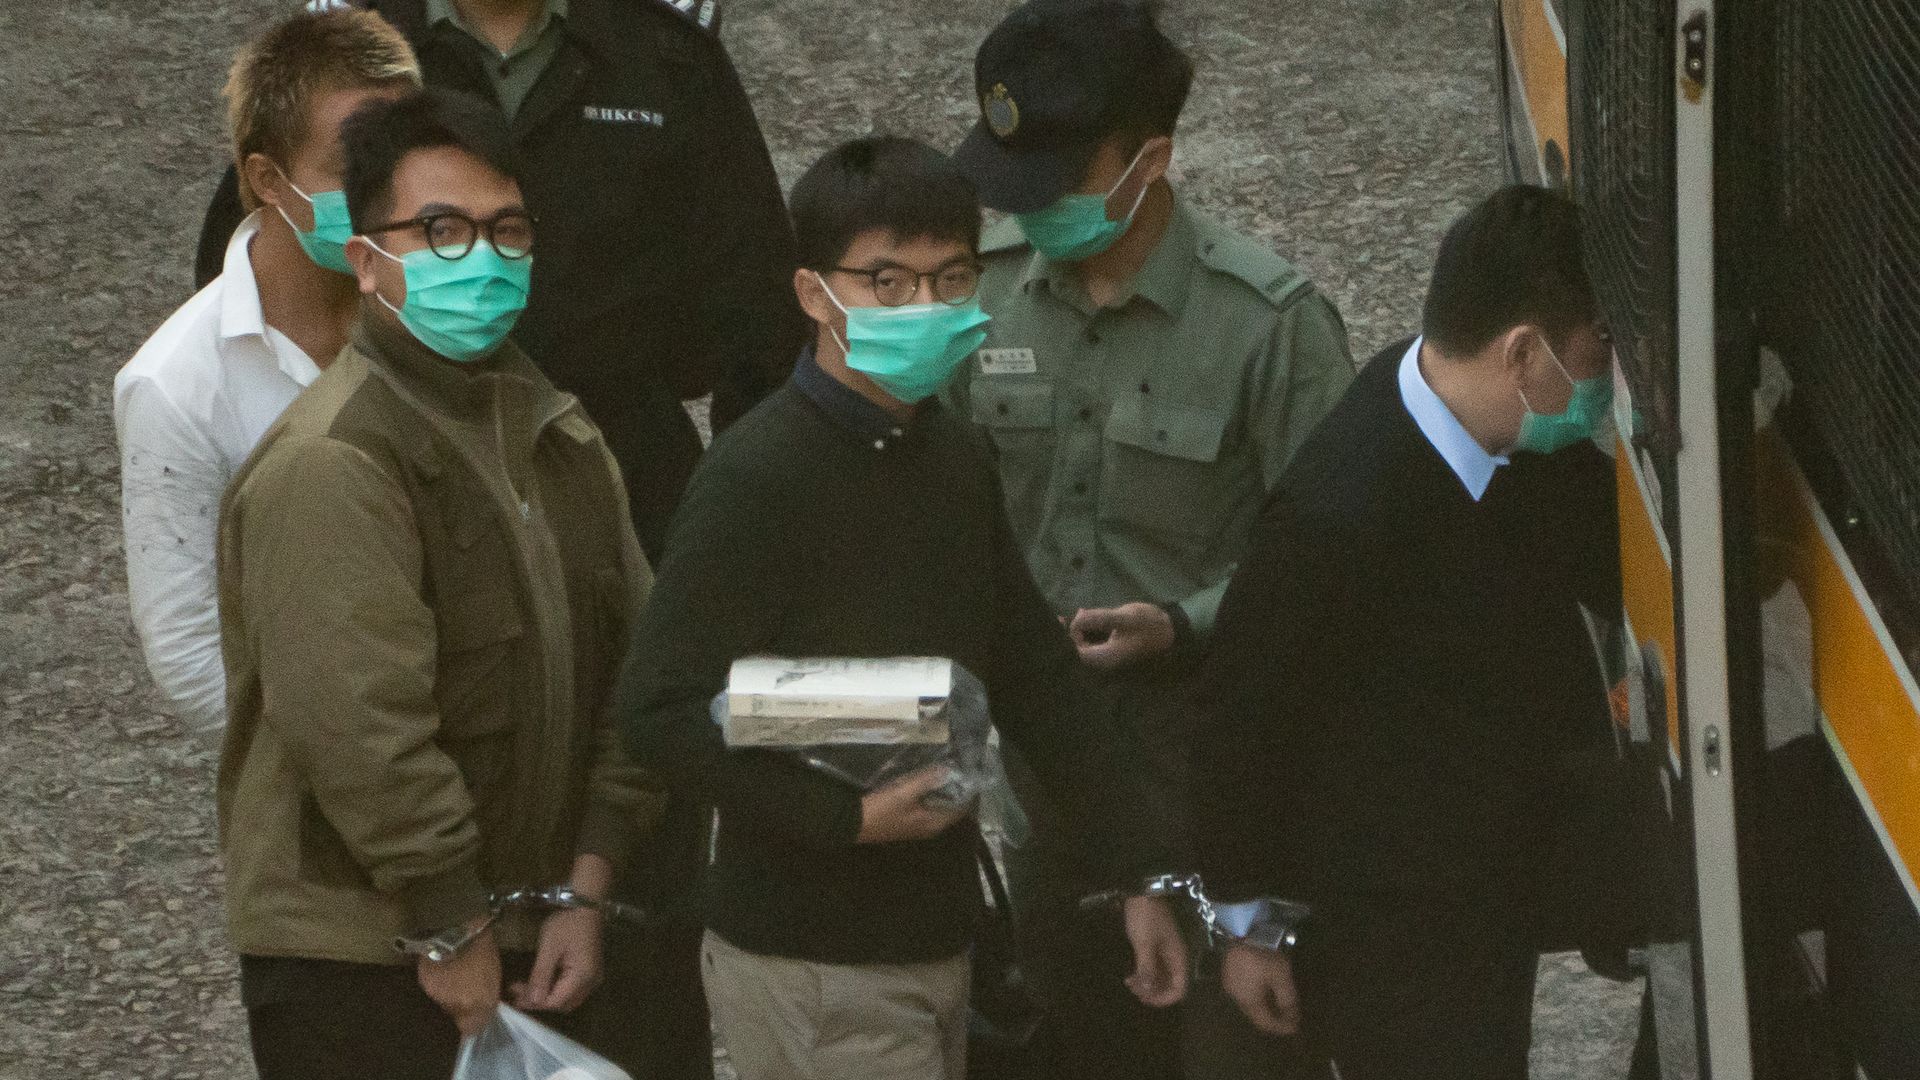 Pro-democracy activists Joshua Wong (C) and Ivan Lam (L) board a Hong Kong Correctional Service van ahead of a sentence hearing at Lai Chi Kok Reception Centre on December 2, 2020 in Hong Kong